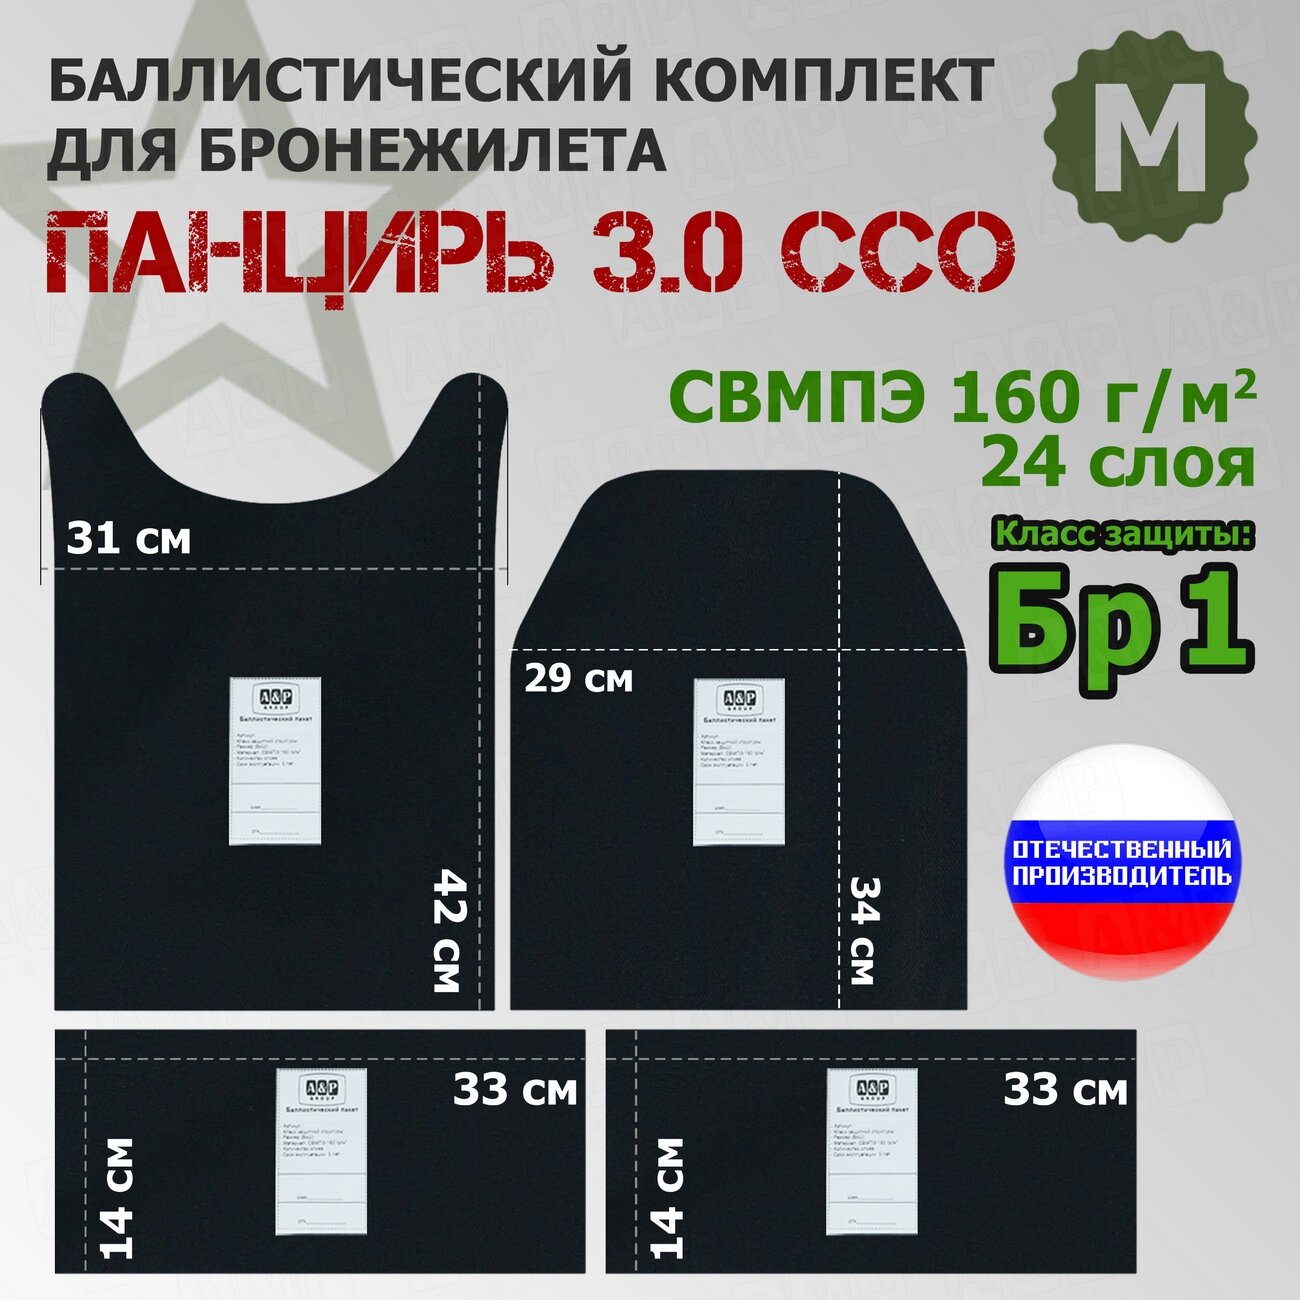 Комплект баллистических пакетов для плитника "Панцирь 3.0" (размер М) от ССО. Класс защитной структуры Бр 1.